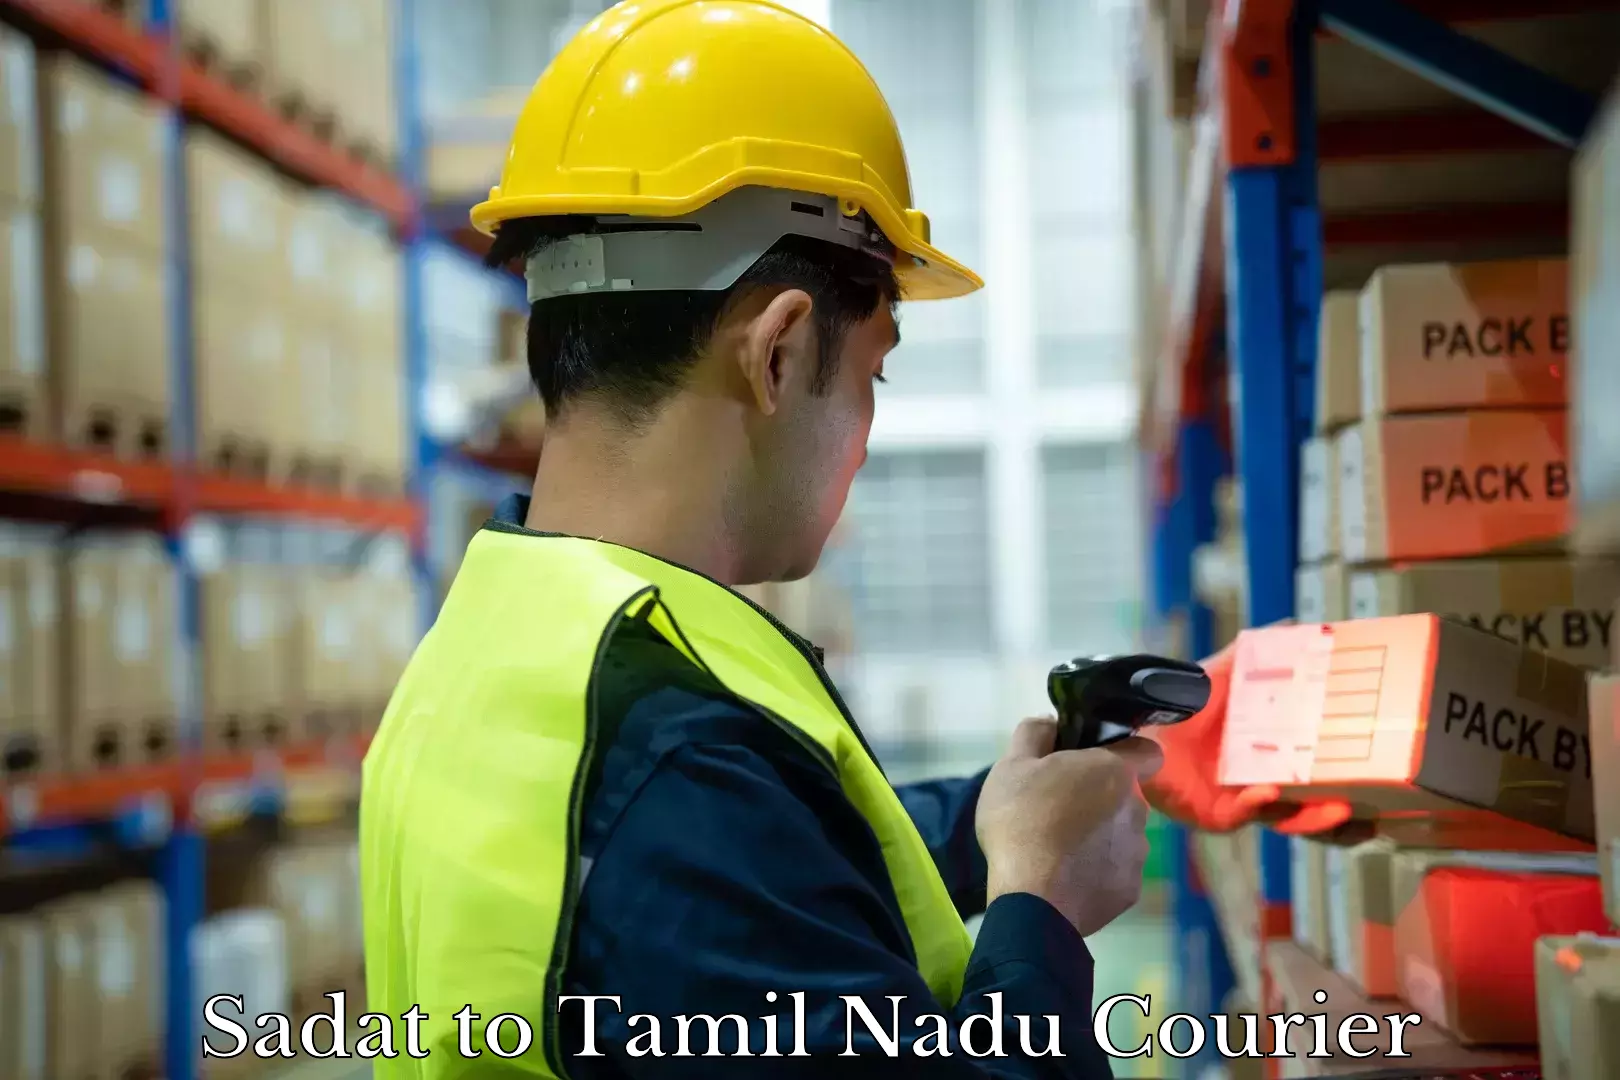 Baggage shipping experts Sadat to Tamil Nadu